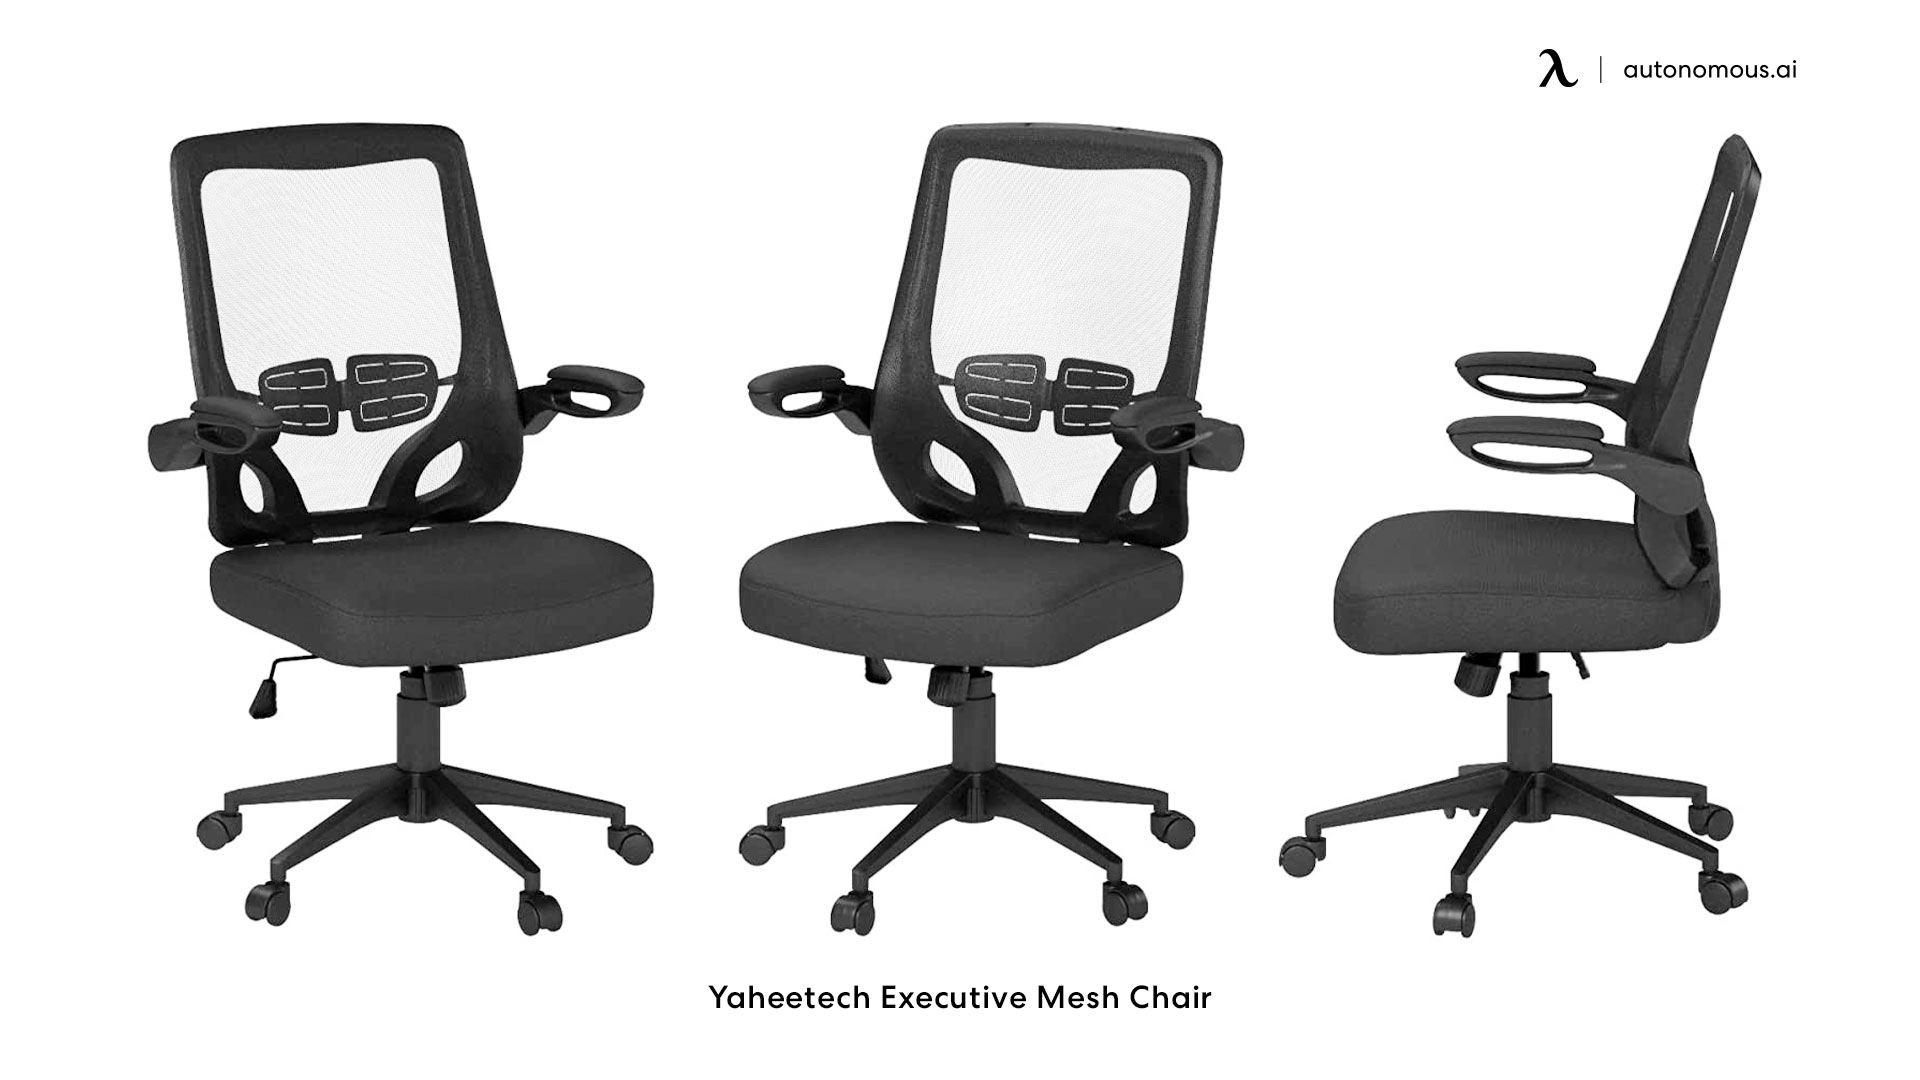 Yaheetech Executive Mesh Chair